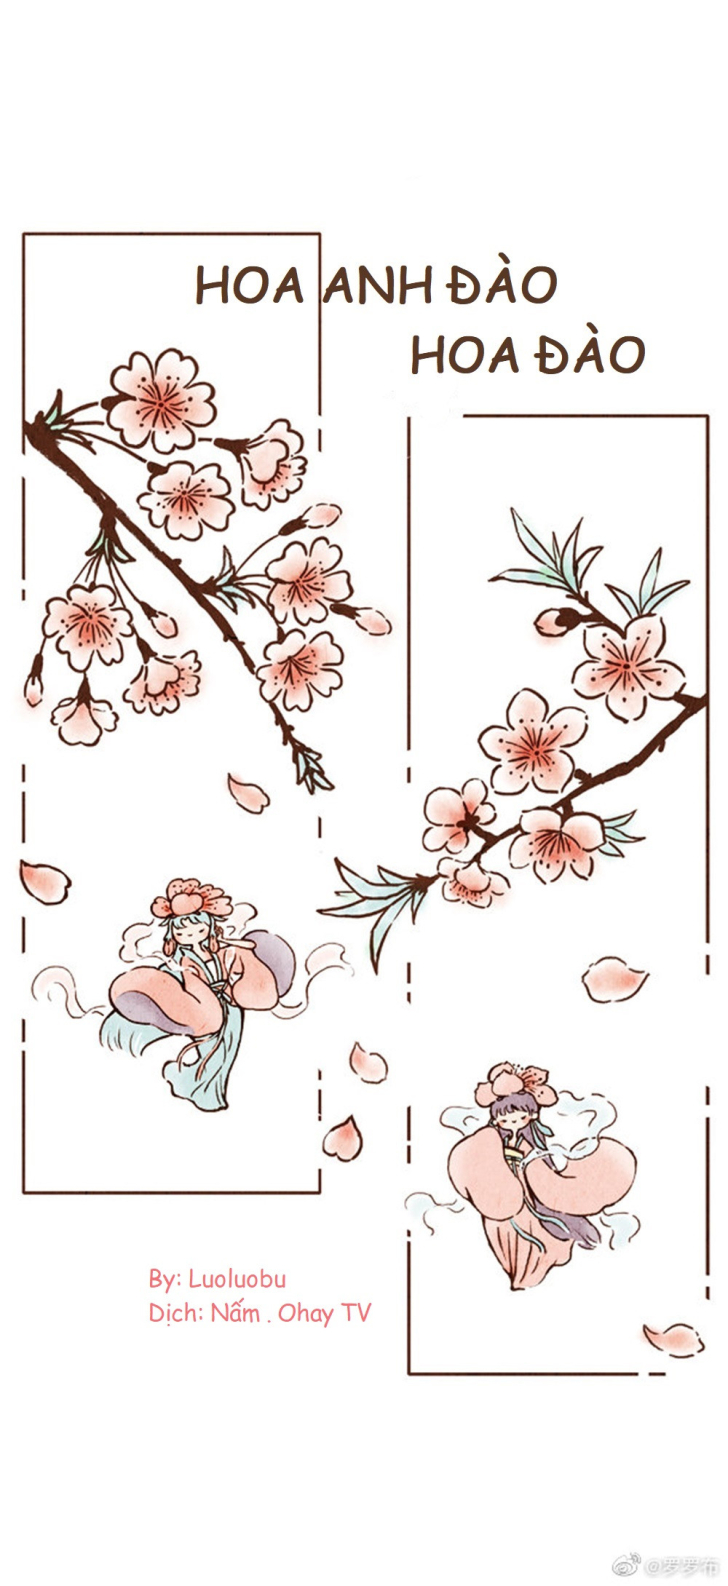 Hướng dẫn vẽ màu nước cơ bản Cách vẽ hoa đào hoa anh đào cực đơn giản  bằng màu nước  Nhật ký nghệ thuật Hoa anh đào Hoa đạo